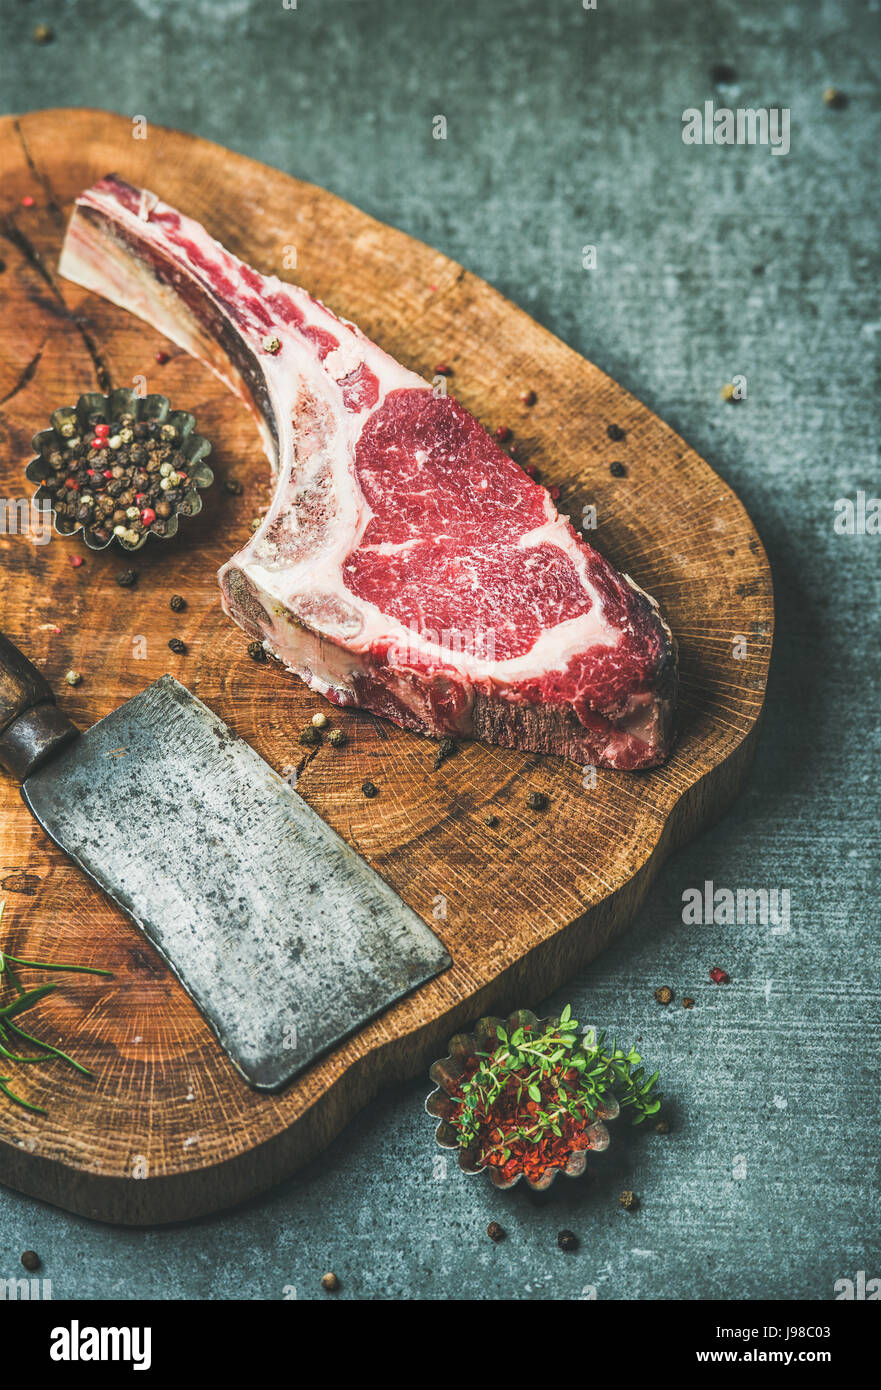 Tagliere In Legno Di Carne Cruda Immagini e Fotos Stock - Alamy